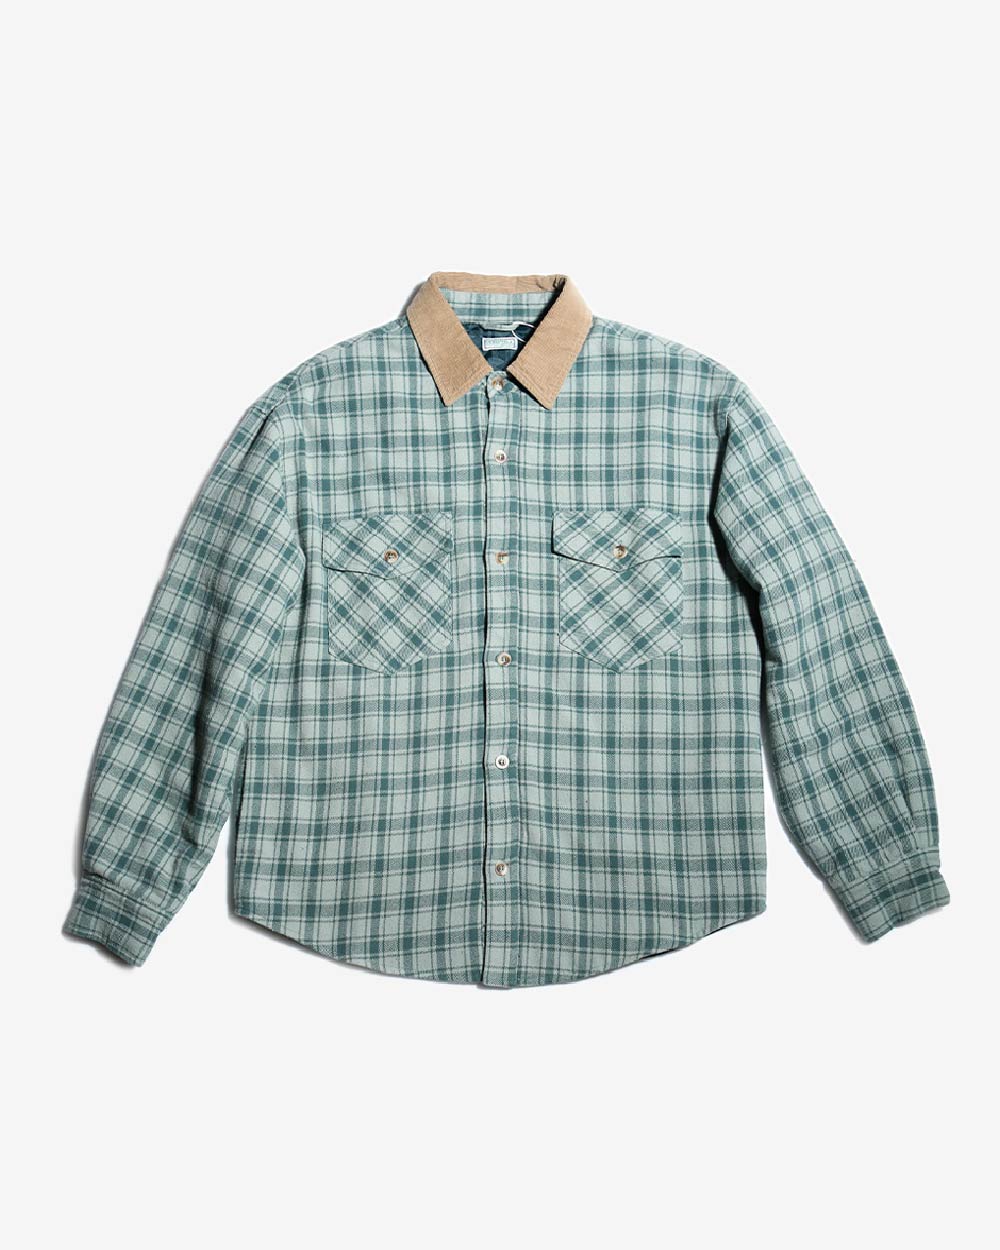 Gusa Flannel Shirt